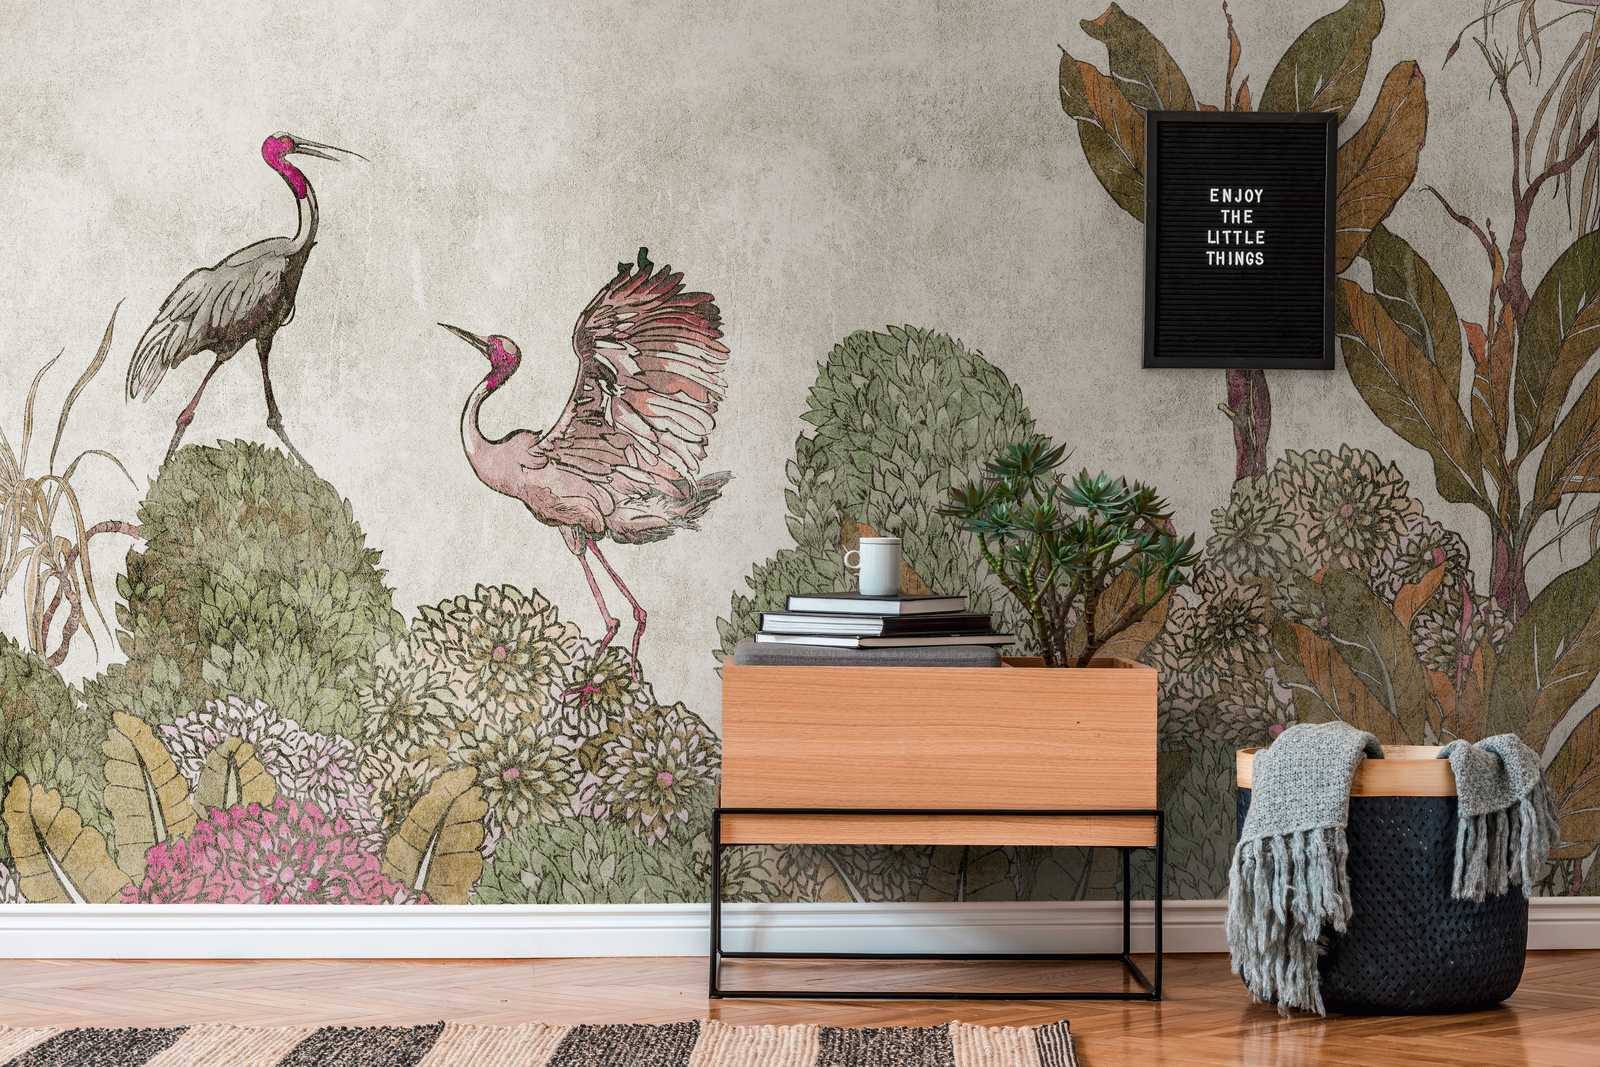             papel pintado novedad | papel pintado motivo plantas tropicales & grullas en aspecto usado
        